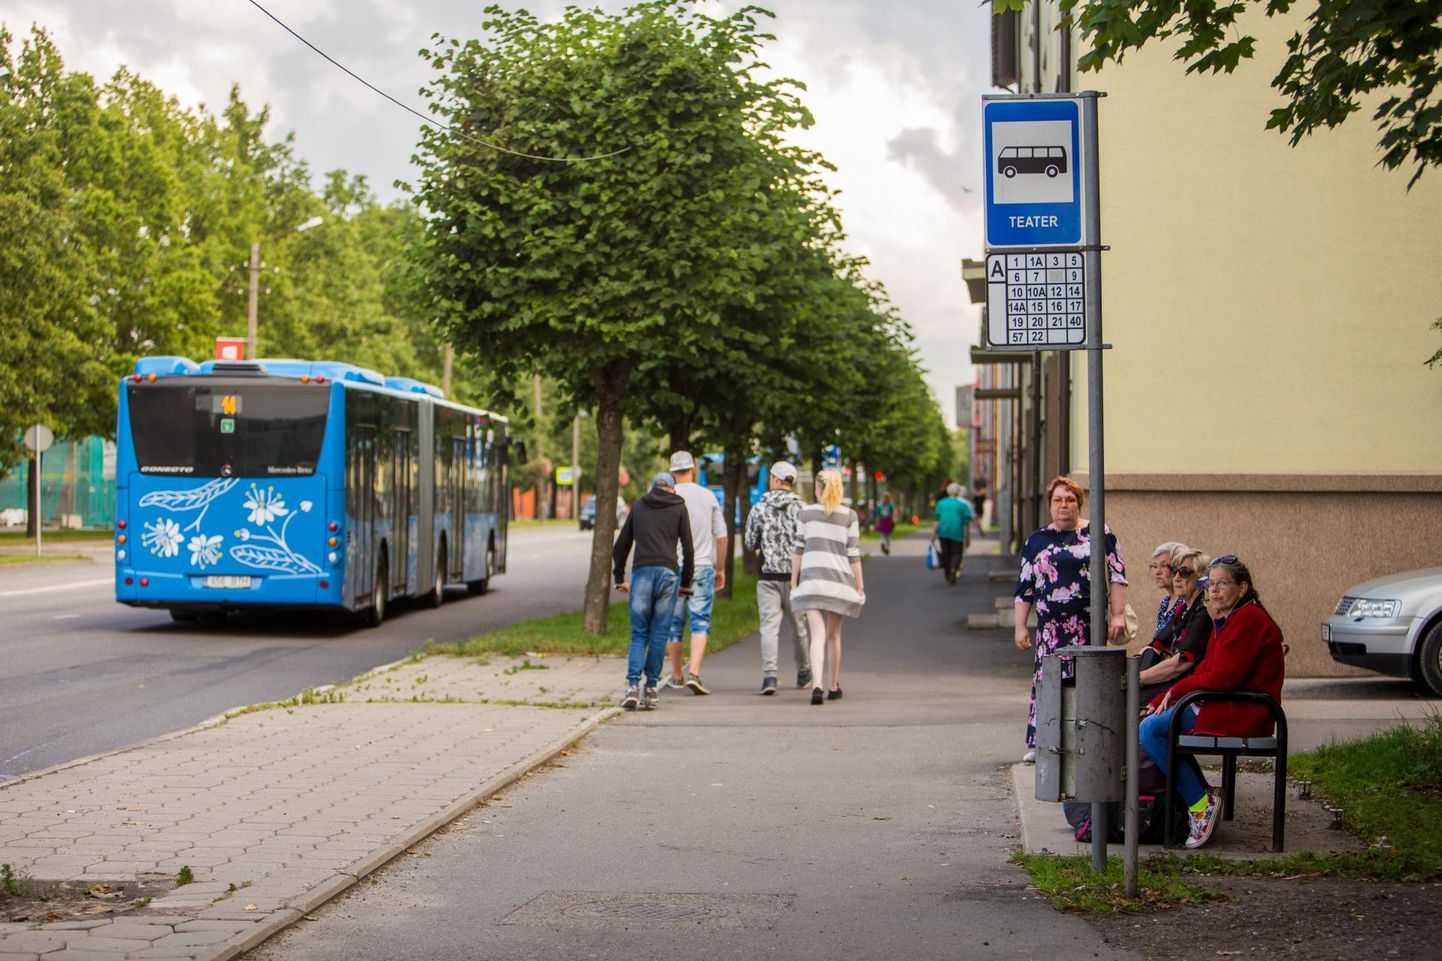 Eelnõu kohaselt saaksid Pärnu linnabussides tasuta sõita kuni 19aastased ning 65aastased ja vanemad inimesed